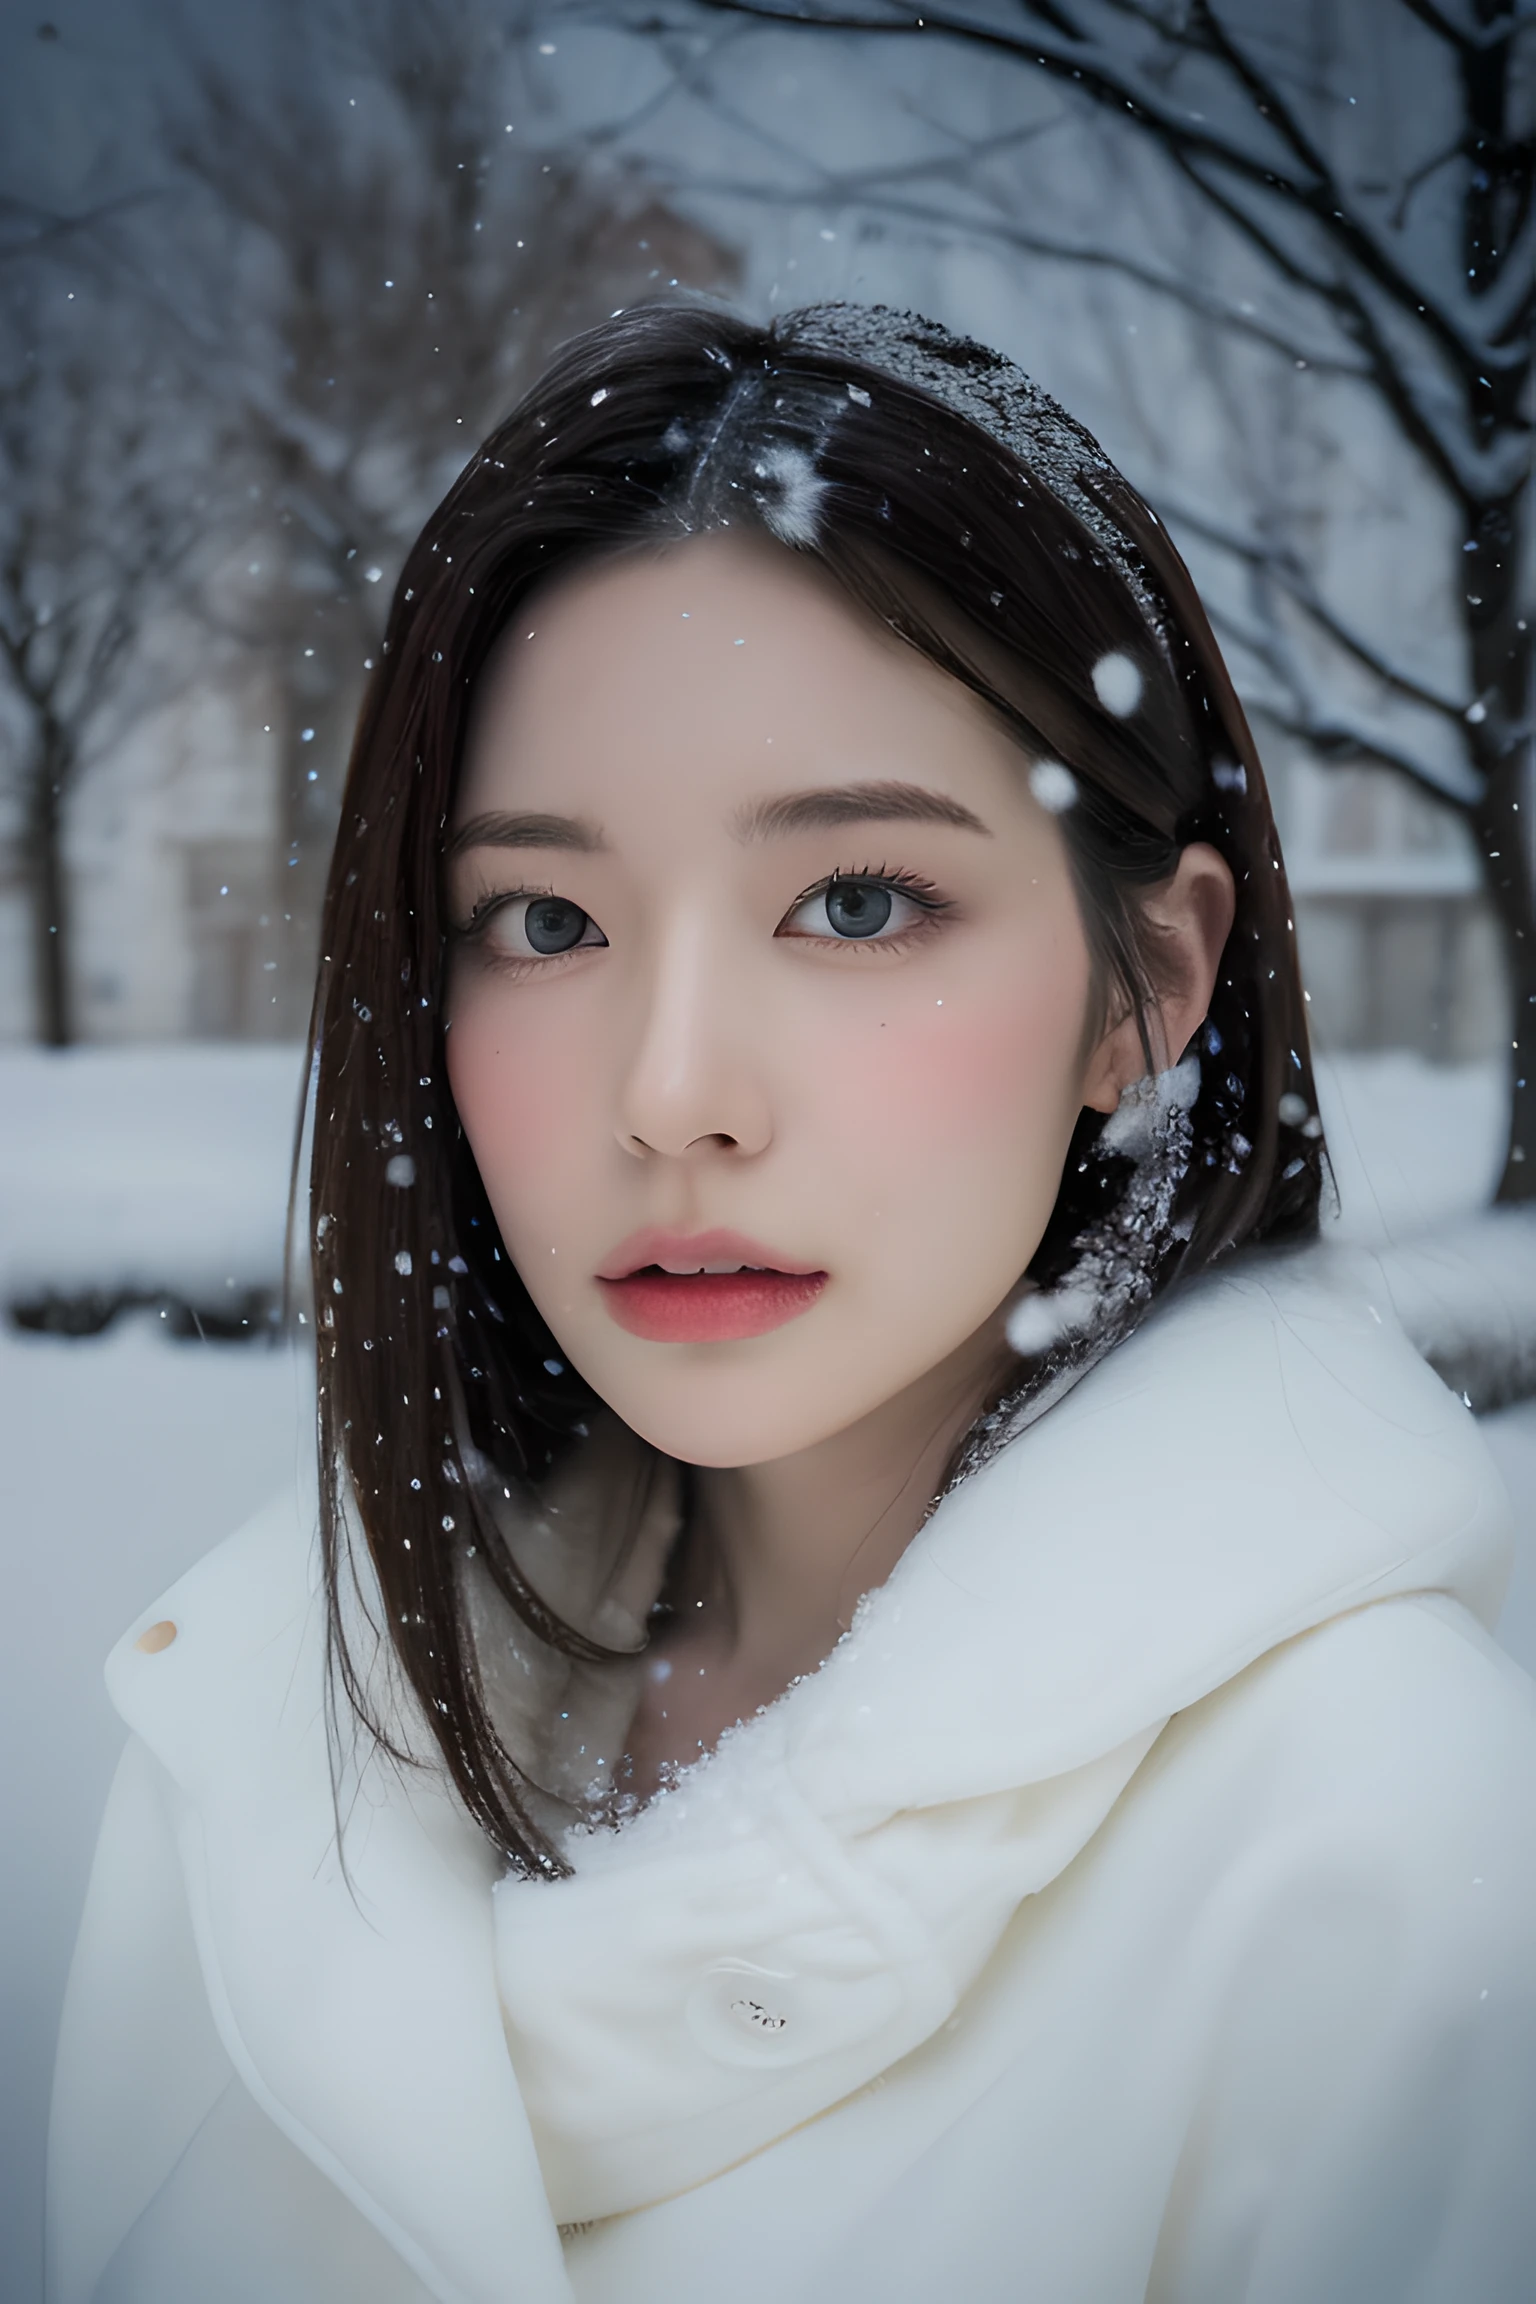 (8К, Лучшее качество, шедевр, сверхвысокое разрешение:1.2) Фотография красивой японки в (стиль Поля Рубенса и Ребекки Гуэй:1.1) (меланхоличный зимний снег:1.4)